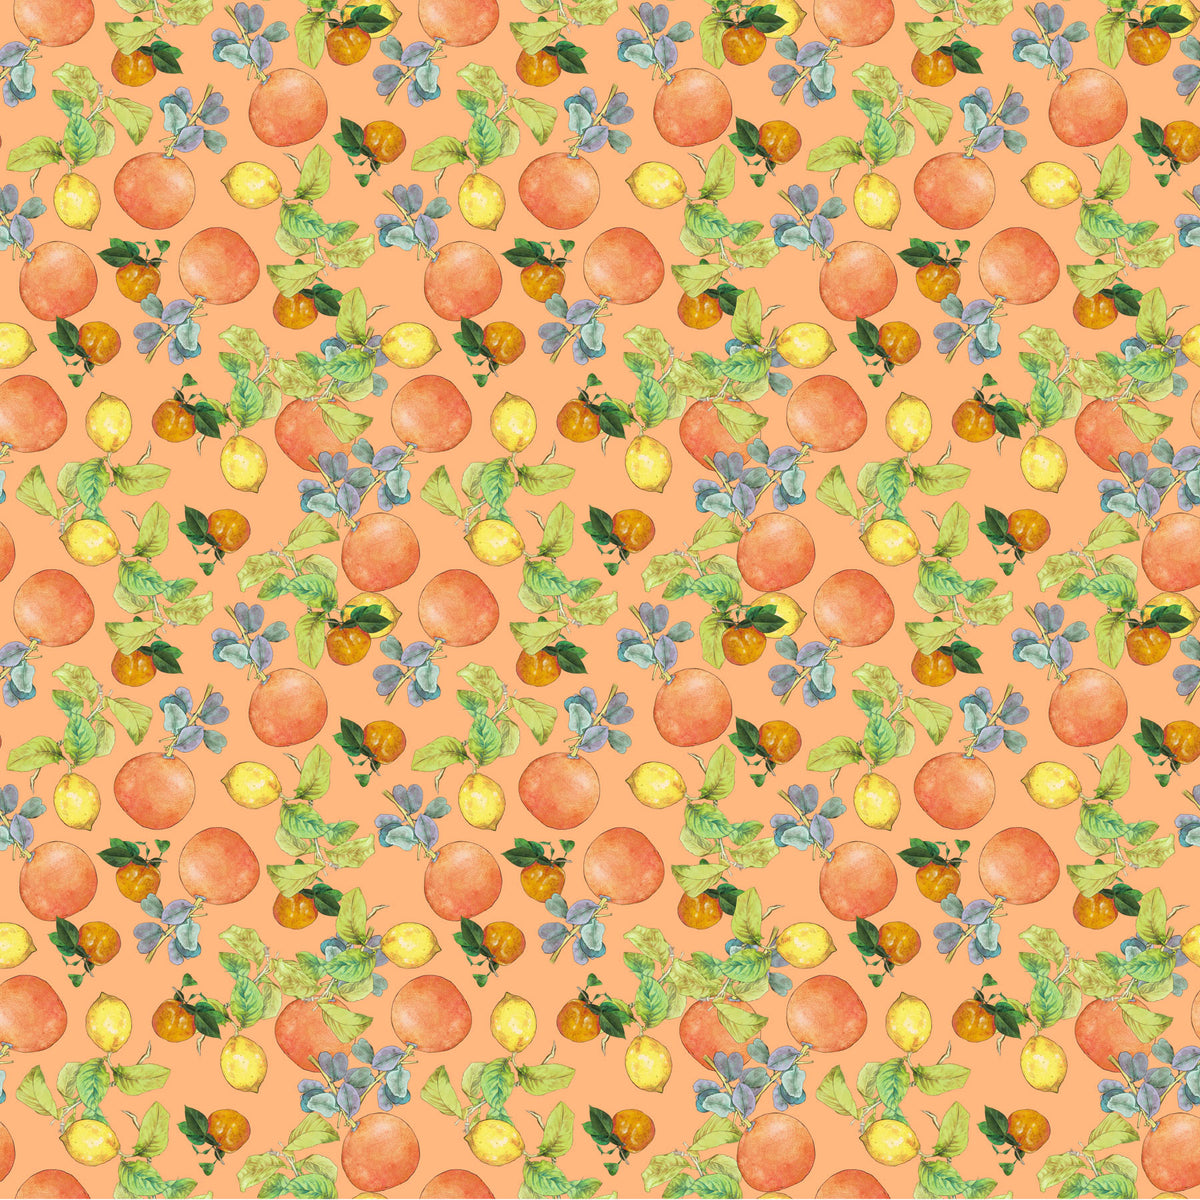 Margo Quilt Fabric - Citrus in Orange - 90800-53Margo Quilt Fabric - Citrus in Orange - 90800-53